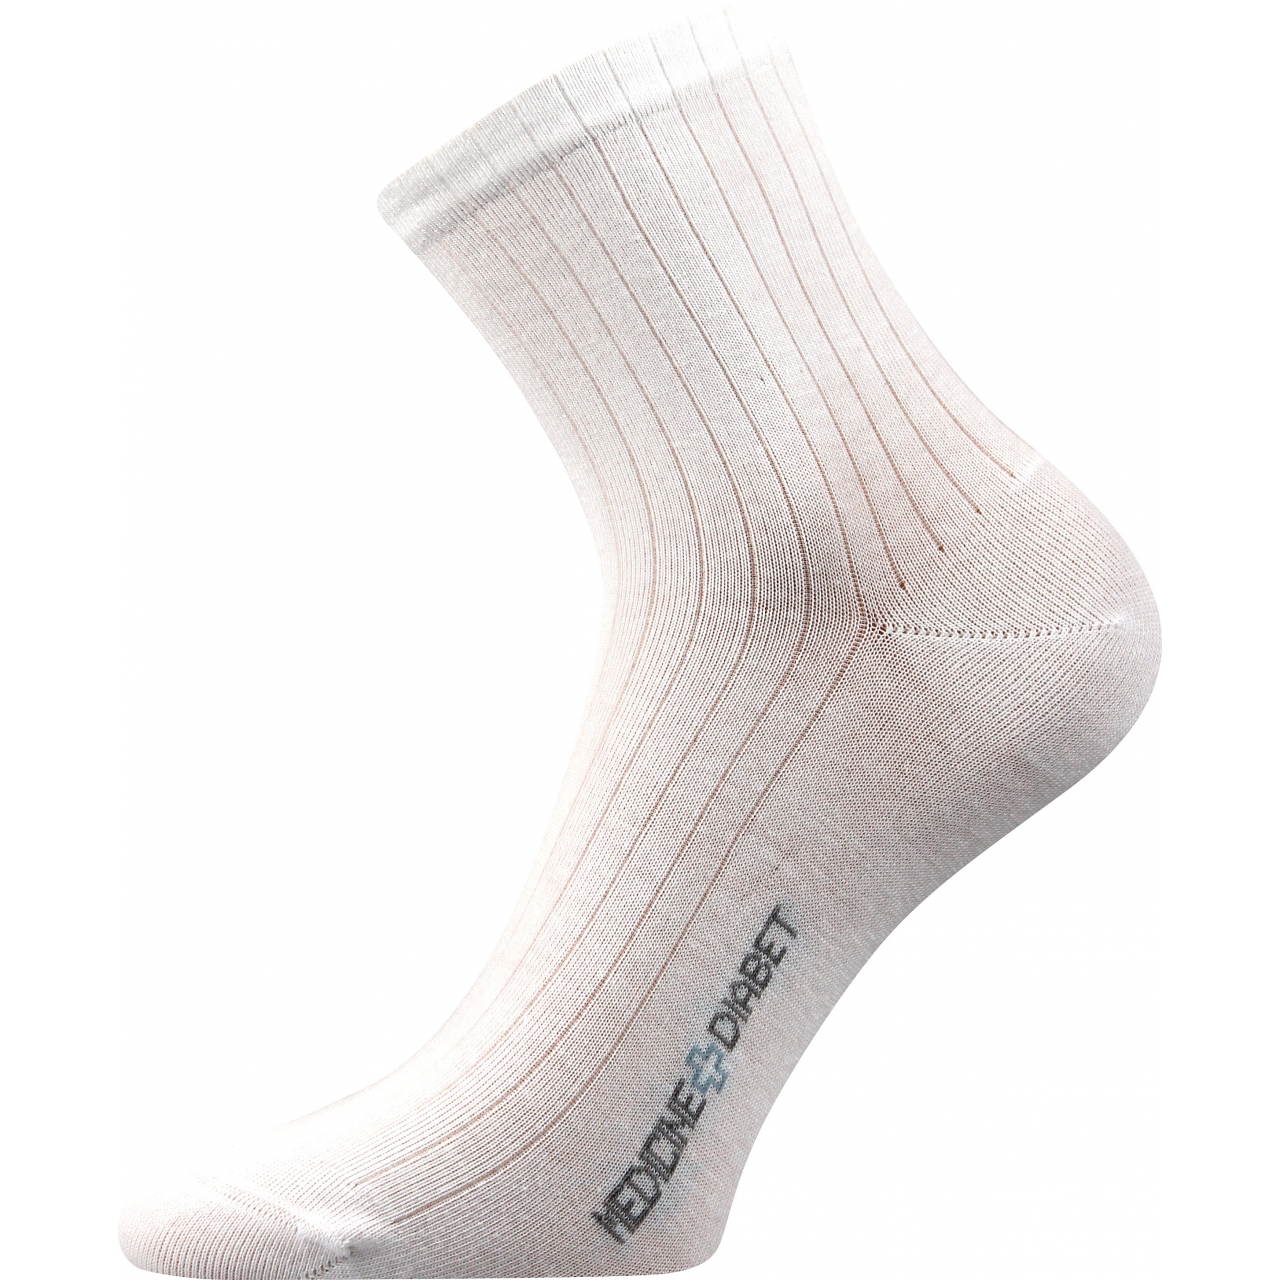 Ponožky zdravotní Lonka Demedik - bílé, 43-46